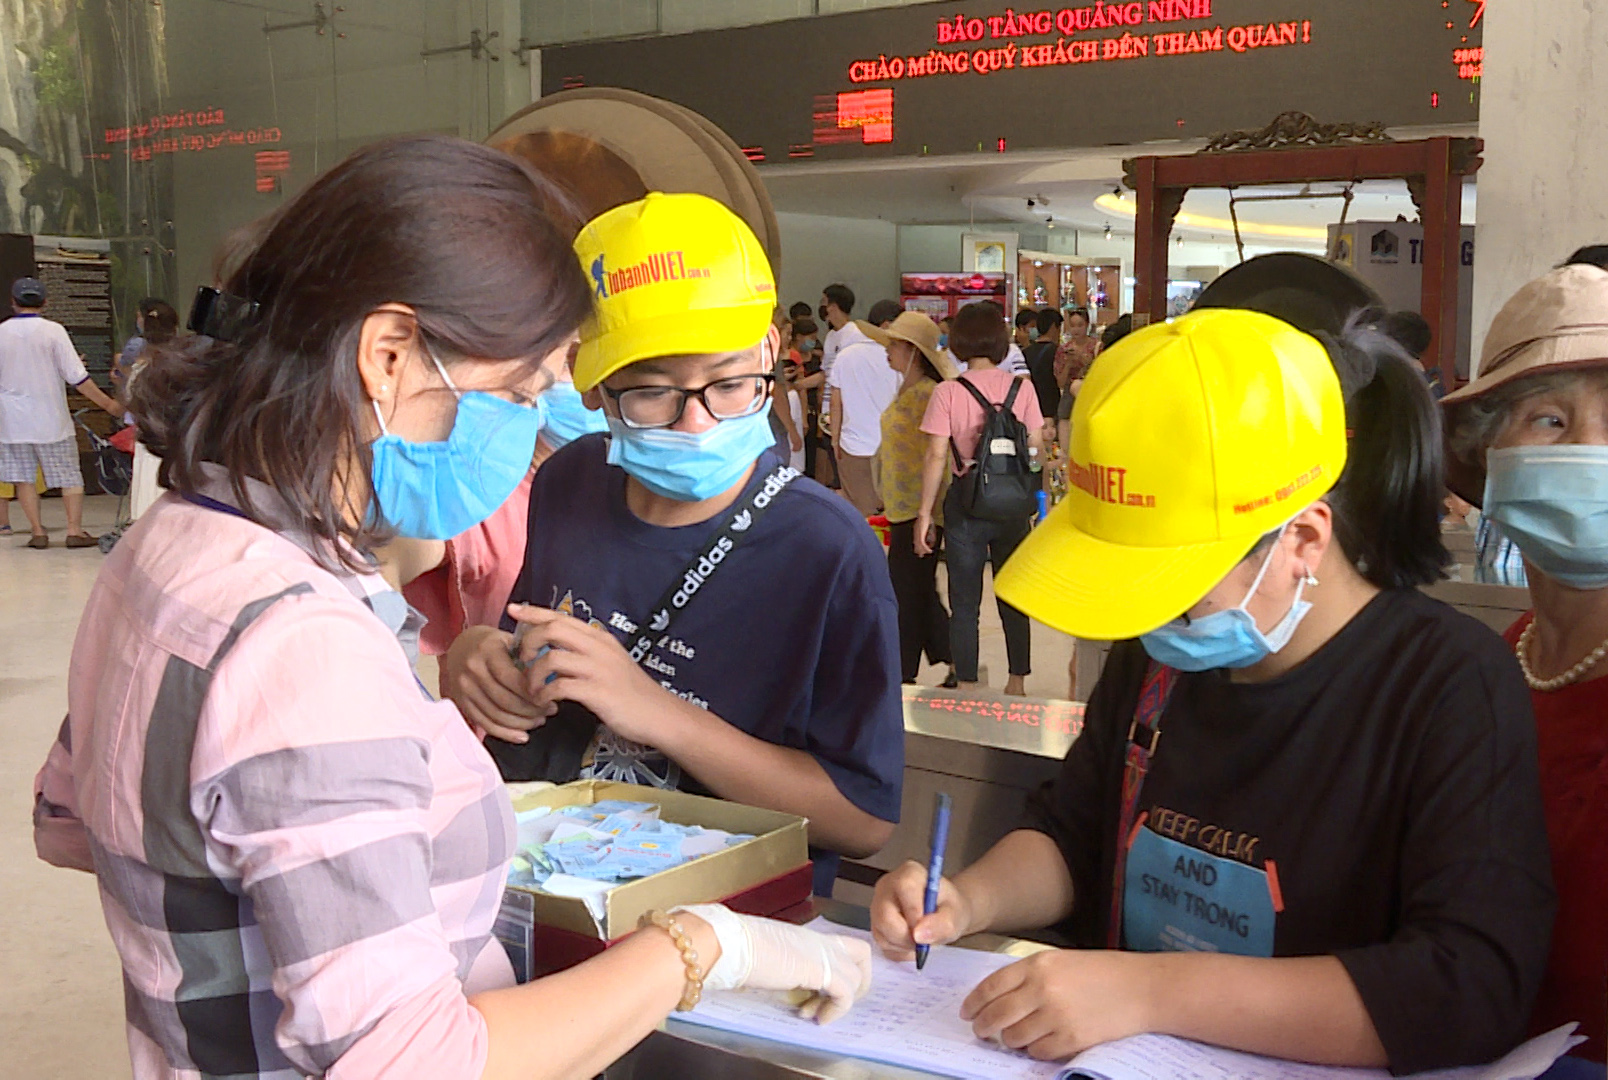 Du khách thực hiện khai báo thông tin trước khi tham quan Bảo tàng Quảng Ninh.